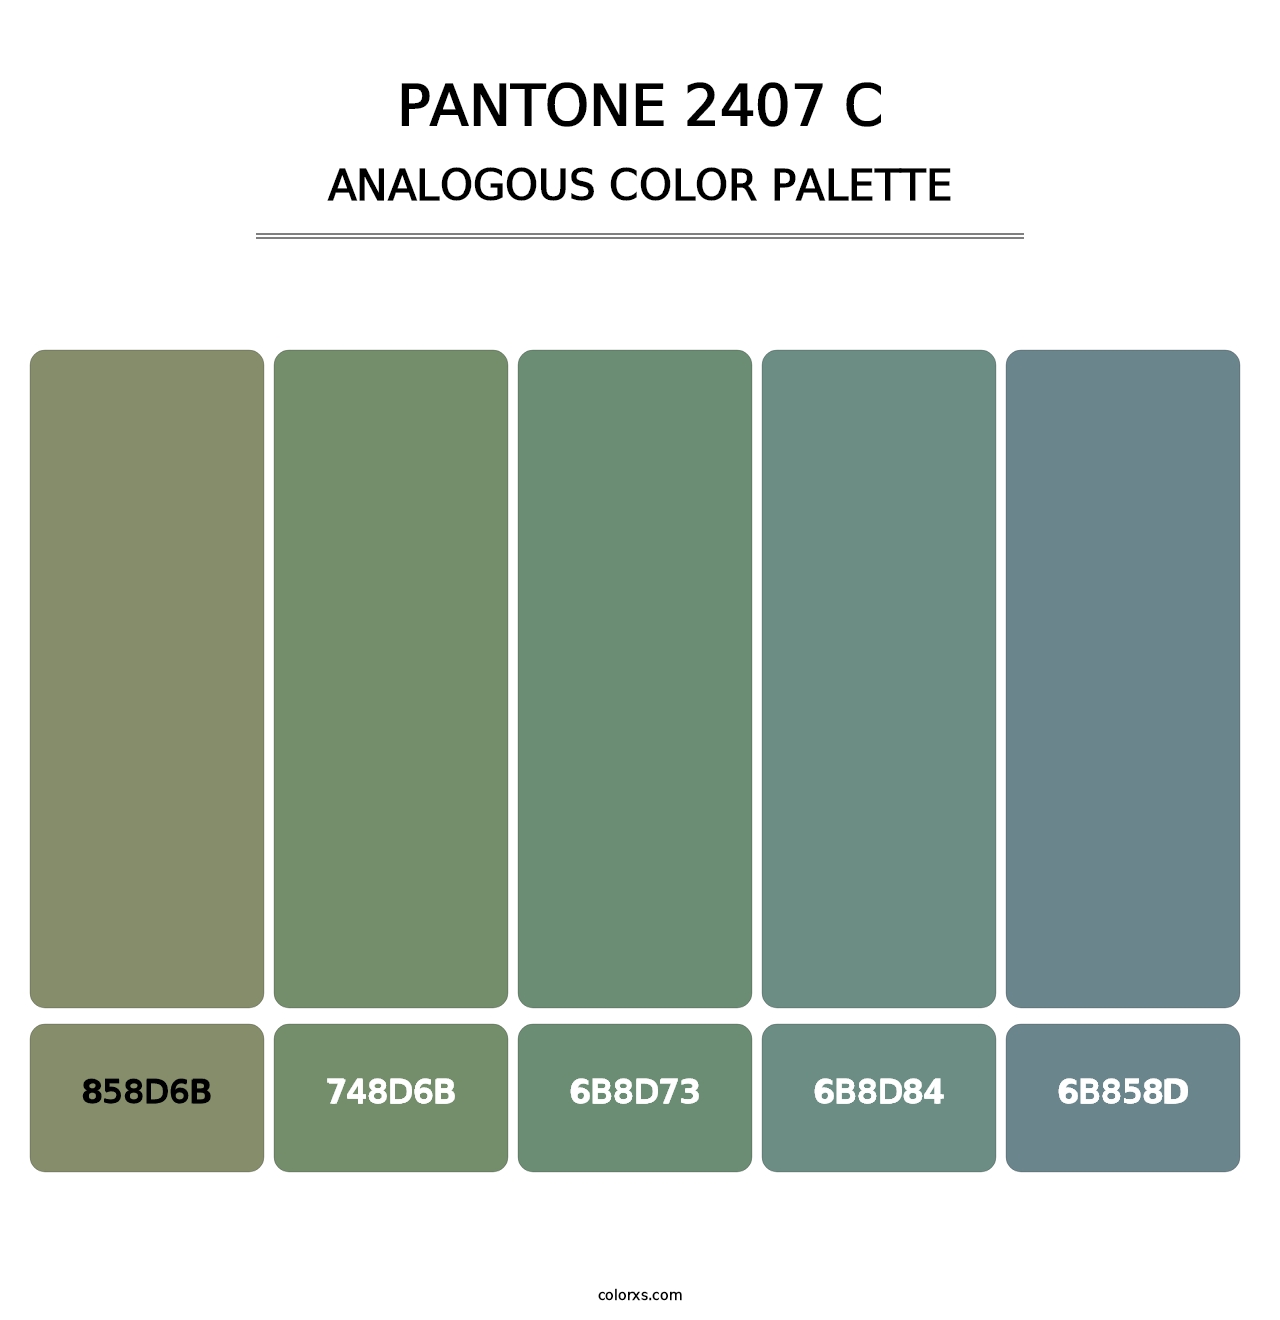 PANTONE 2407 C - Analogous Color Palette